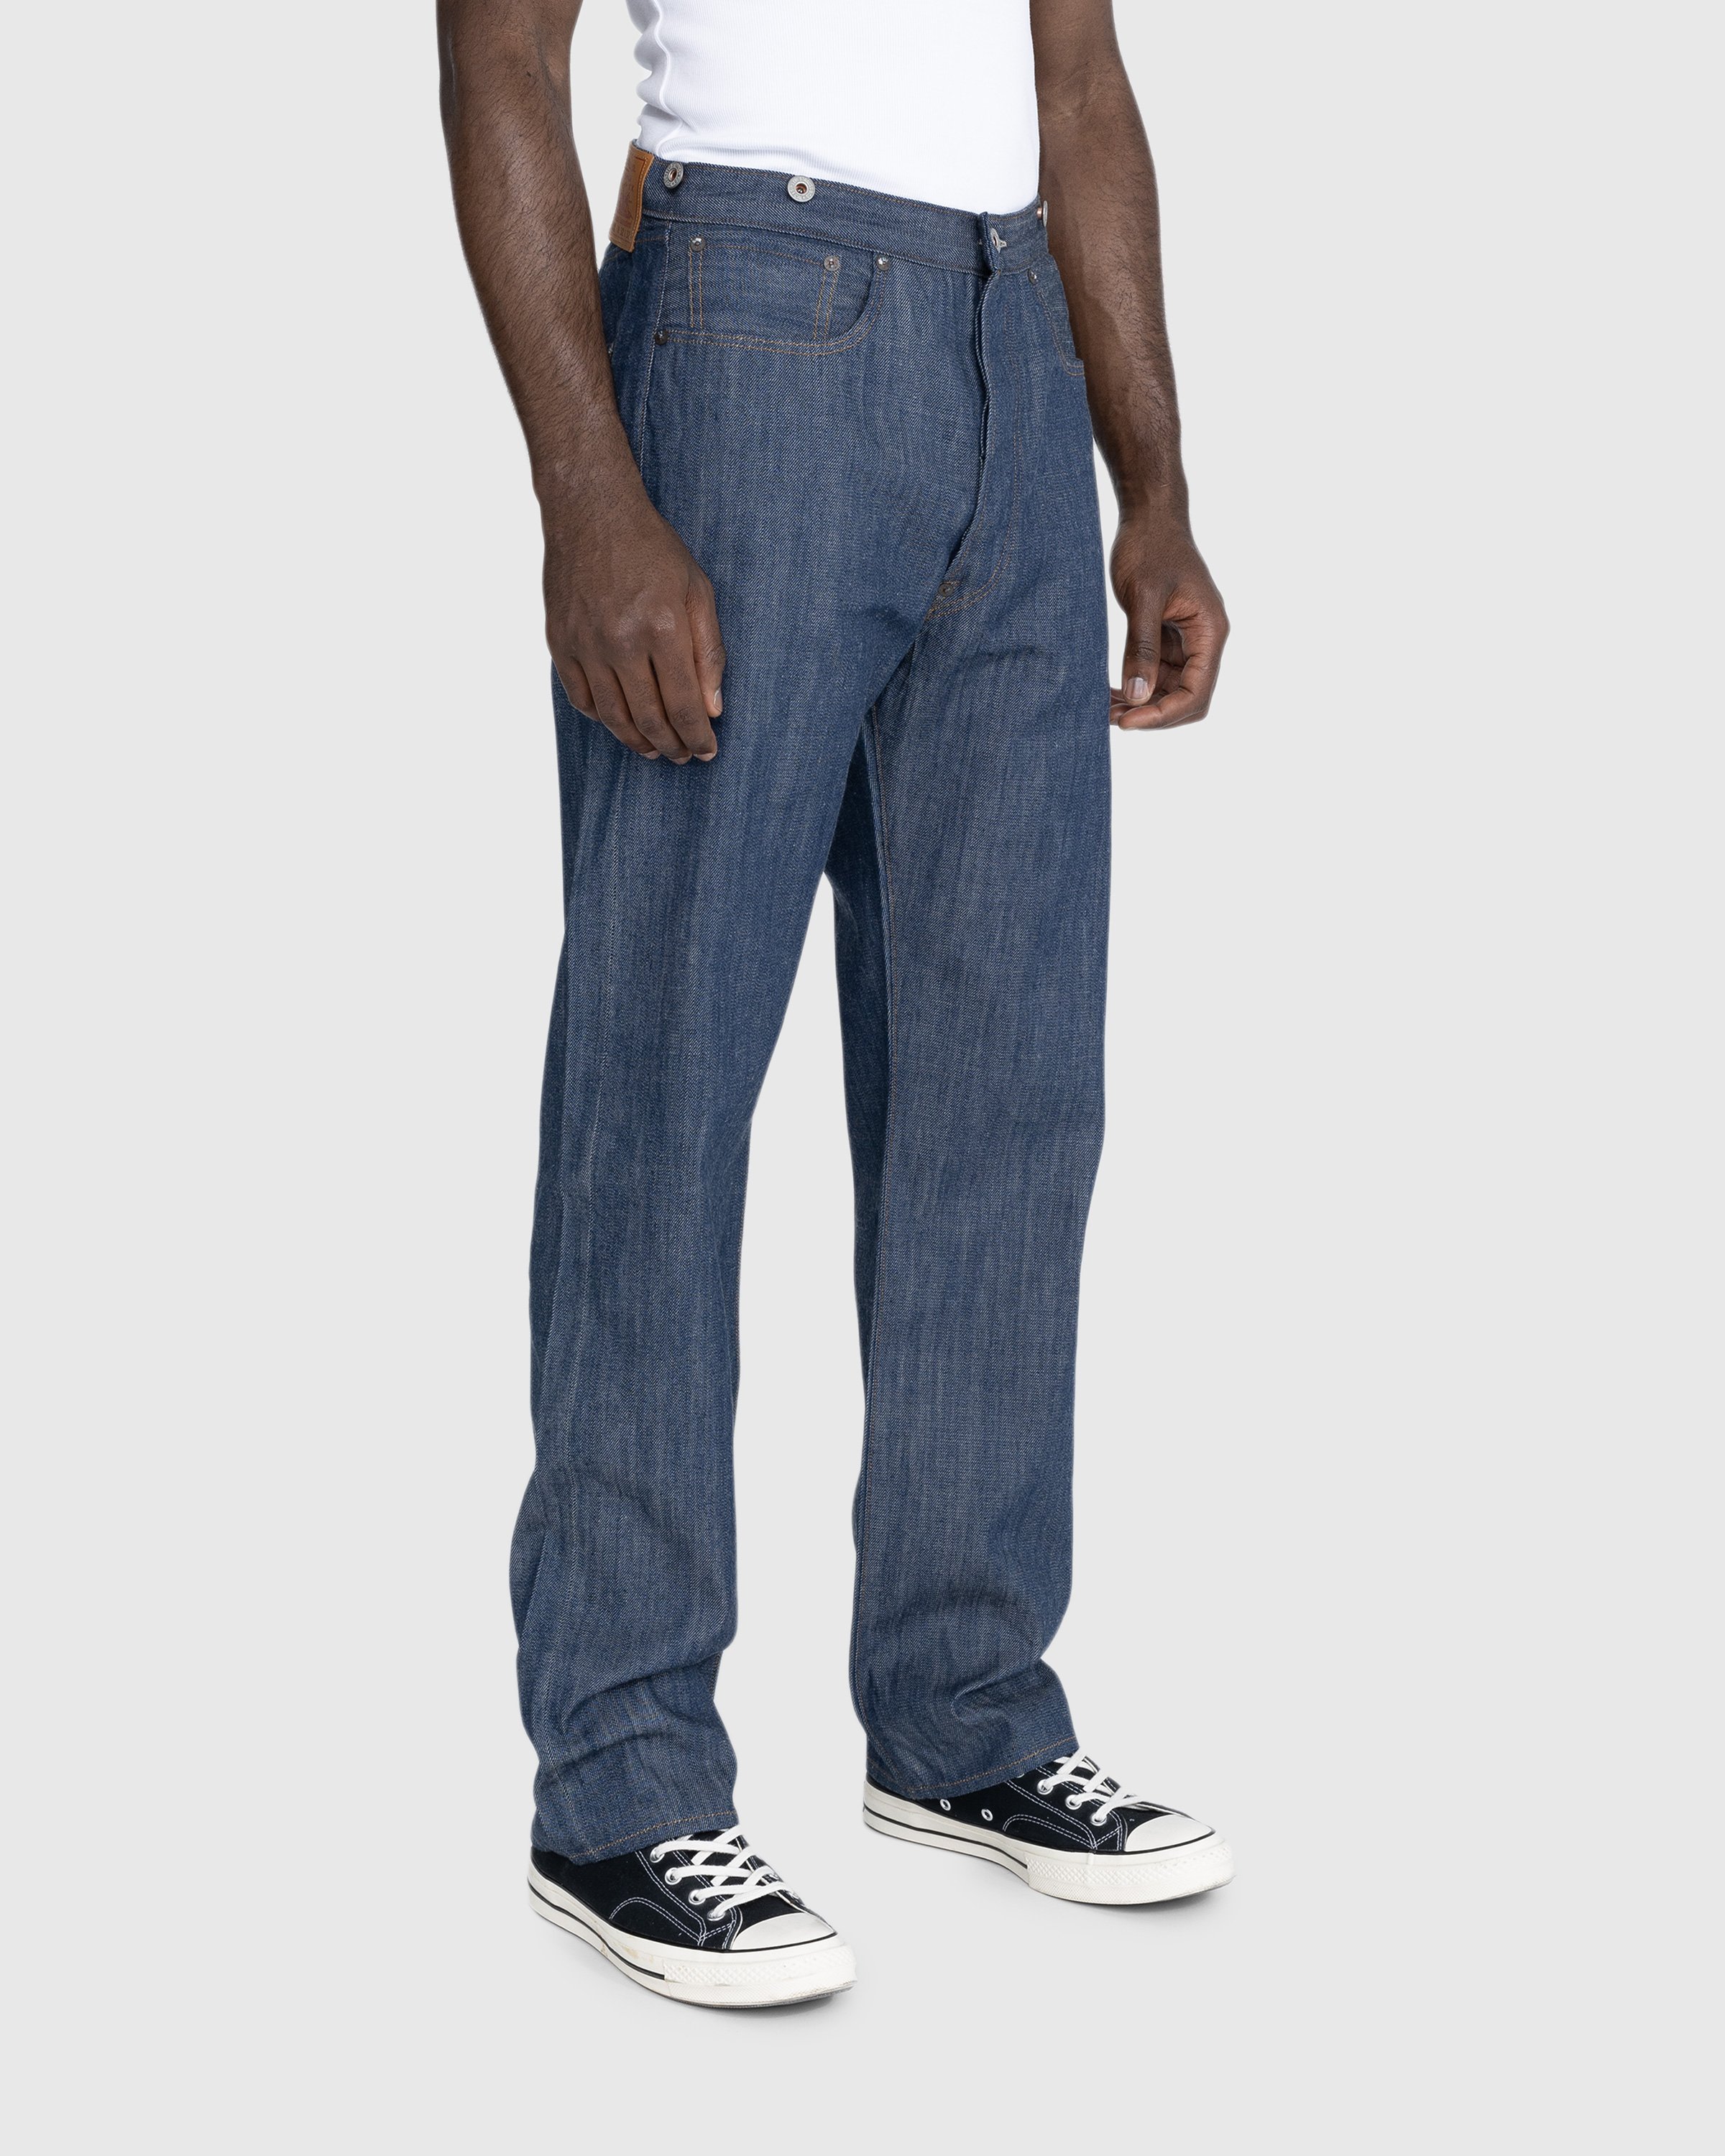 Levi's - 1890 501 Jeans Dark Indigo Flat Finish - Clothing - Blue - Image 5